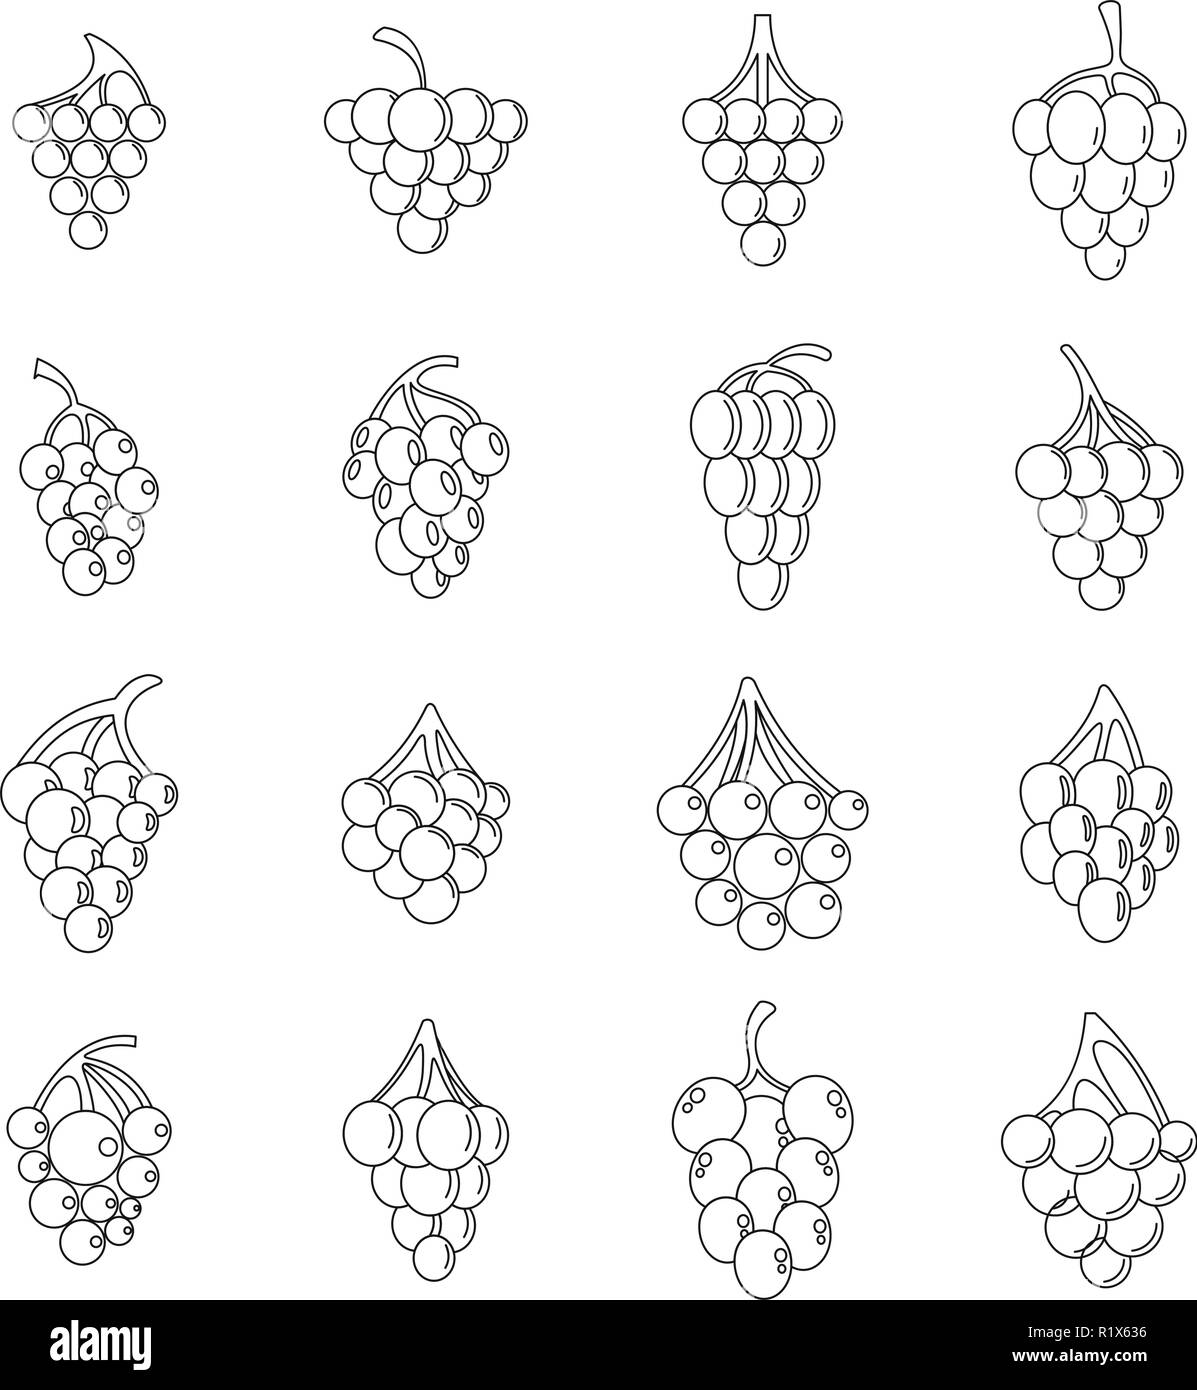 Vino di uve mazzetto di set di icone. Illustrazione di contorno di 16 vini di uva grappolo alcool logo icone vettoriali per il web Illustrazione Vettoriale